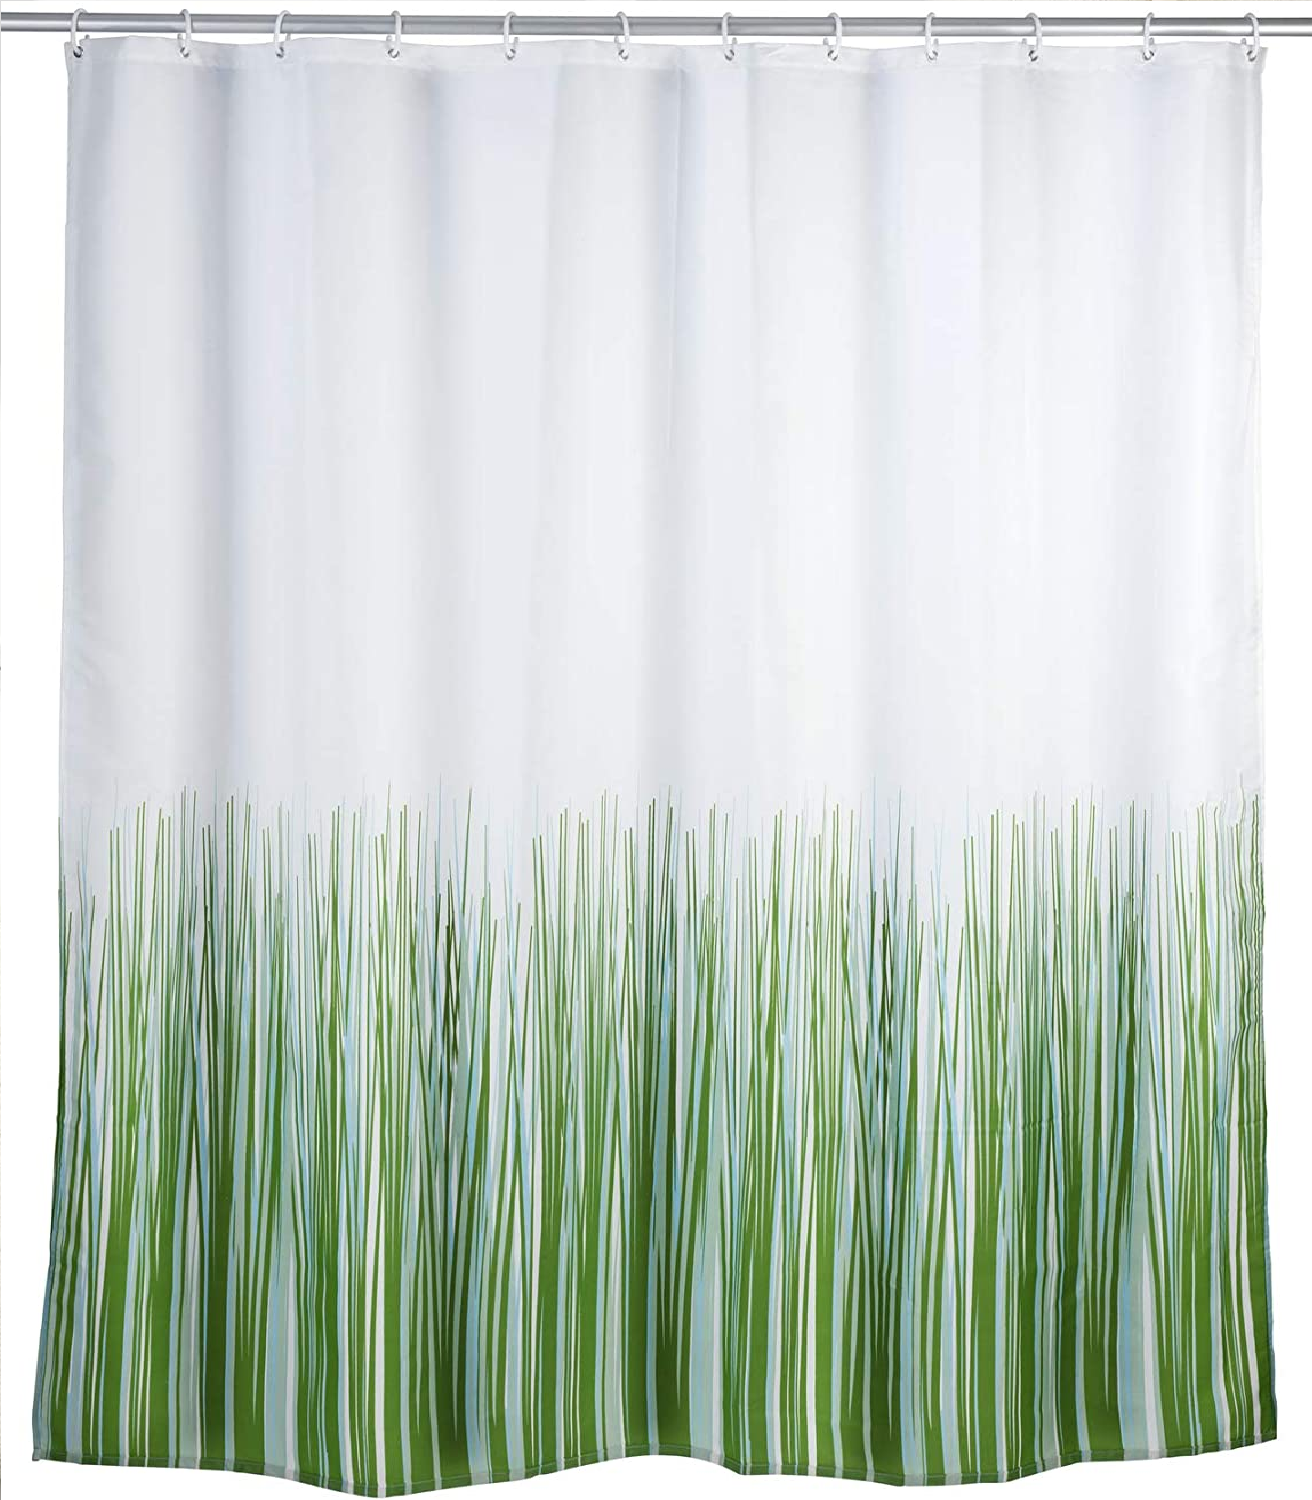 Anti-Schimmel Duschvorhang Nature, Textil-Vorhang mit Antischimmel Effekt fürs Badezimmer, waschbar, wasserabweisend, mit Ringen zur Befestigung an der Duschstange, 180 x 200 cm